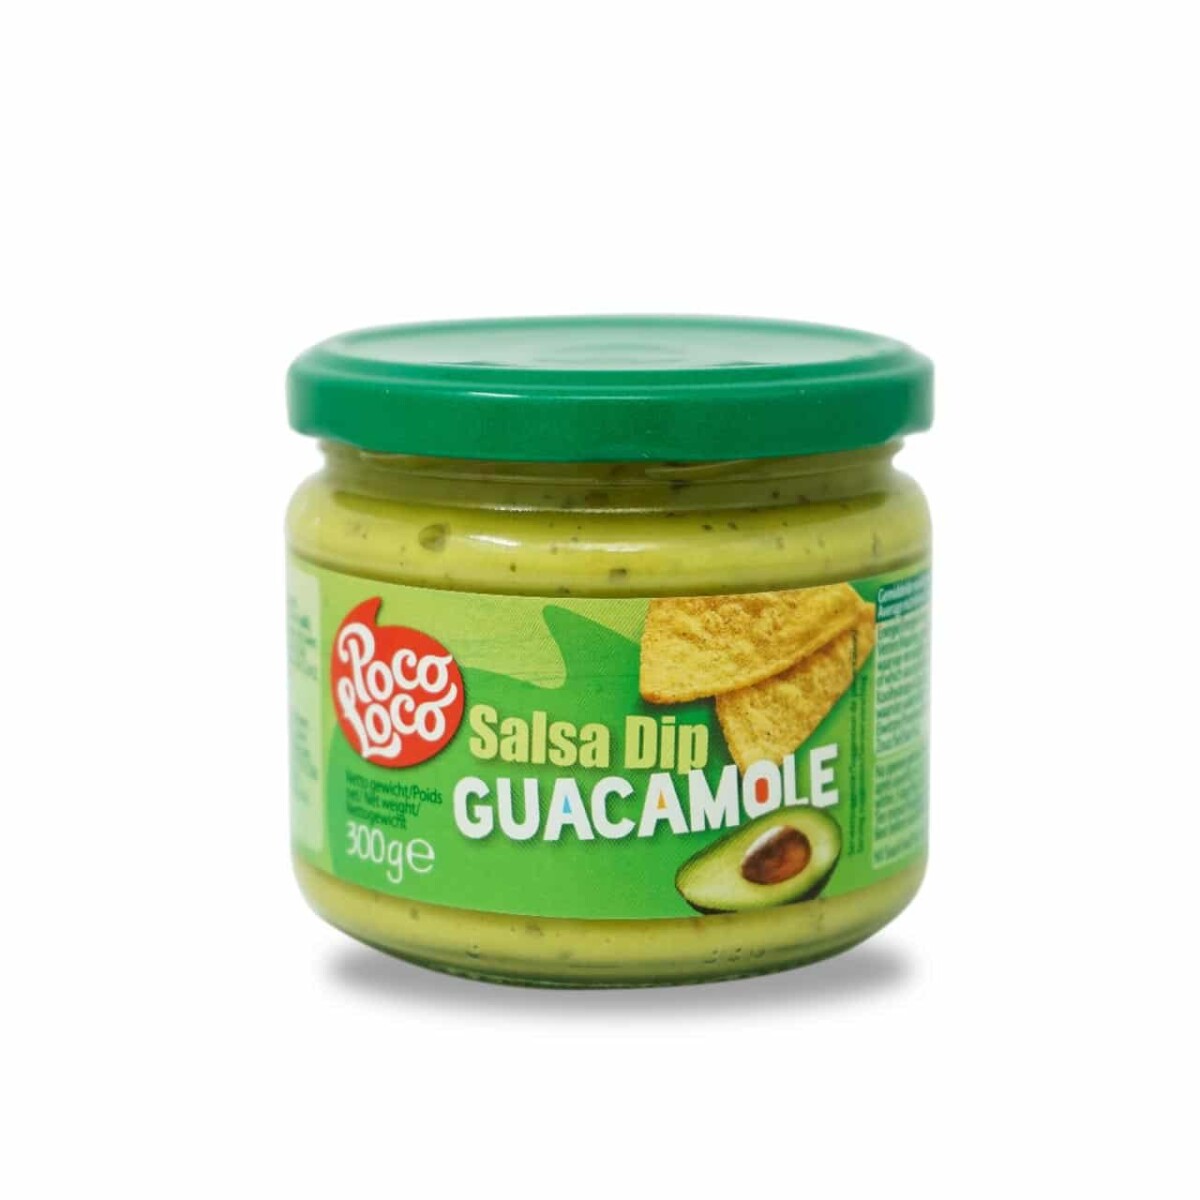 Salsa Dip Poco Loco 300 grs - Guacamole 